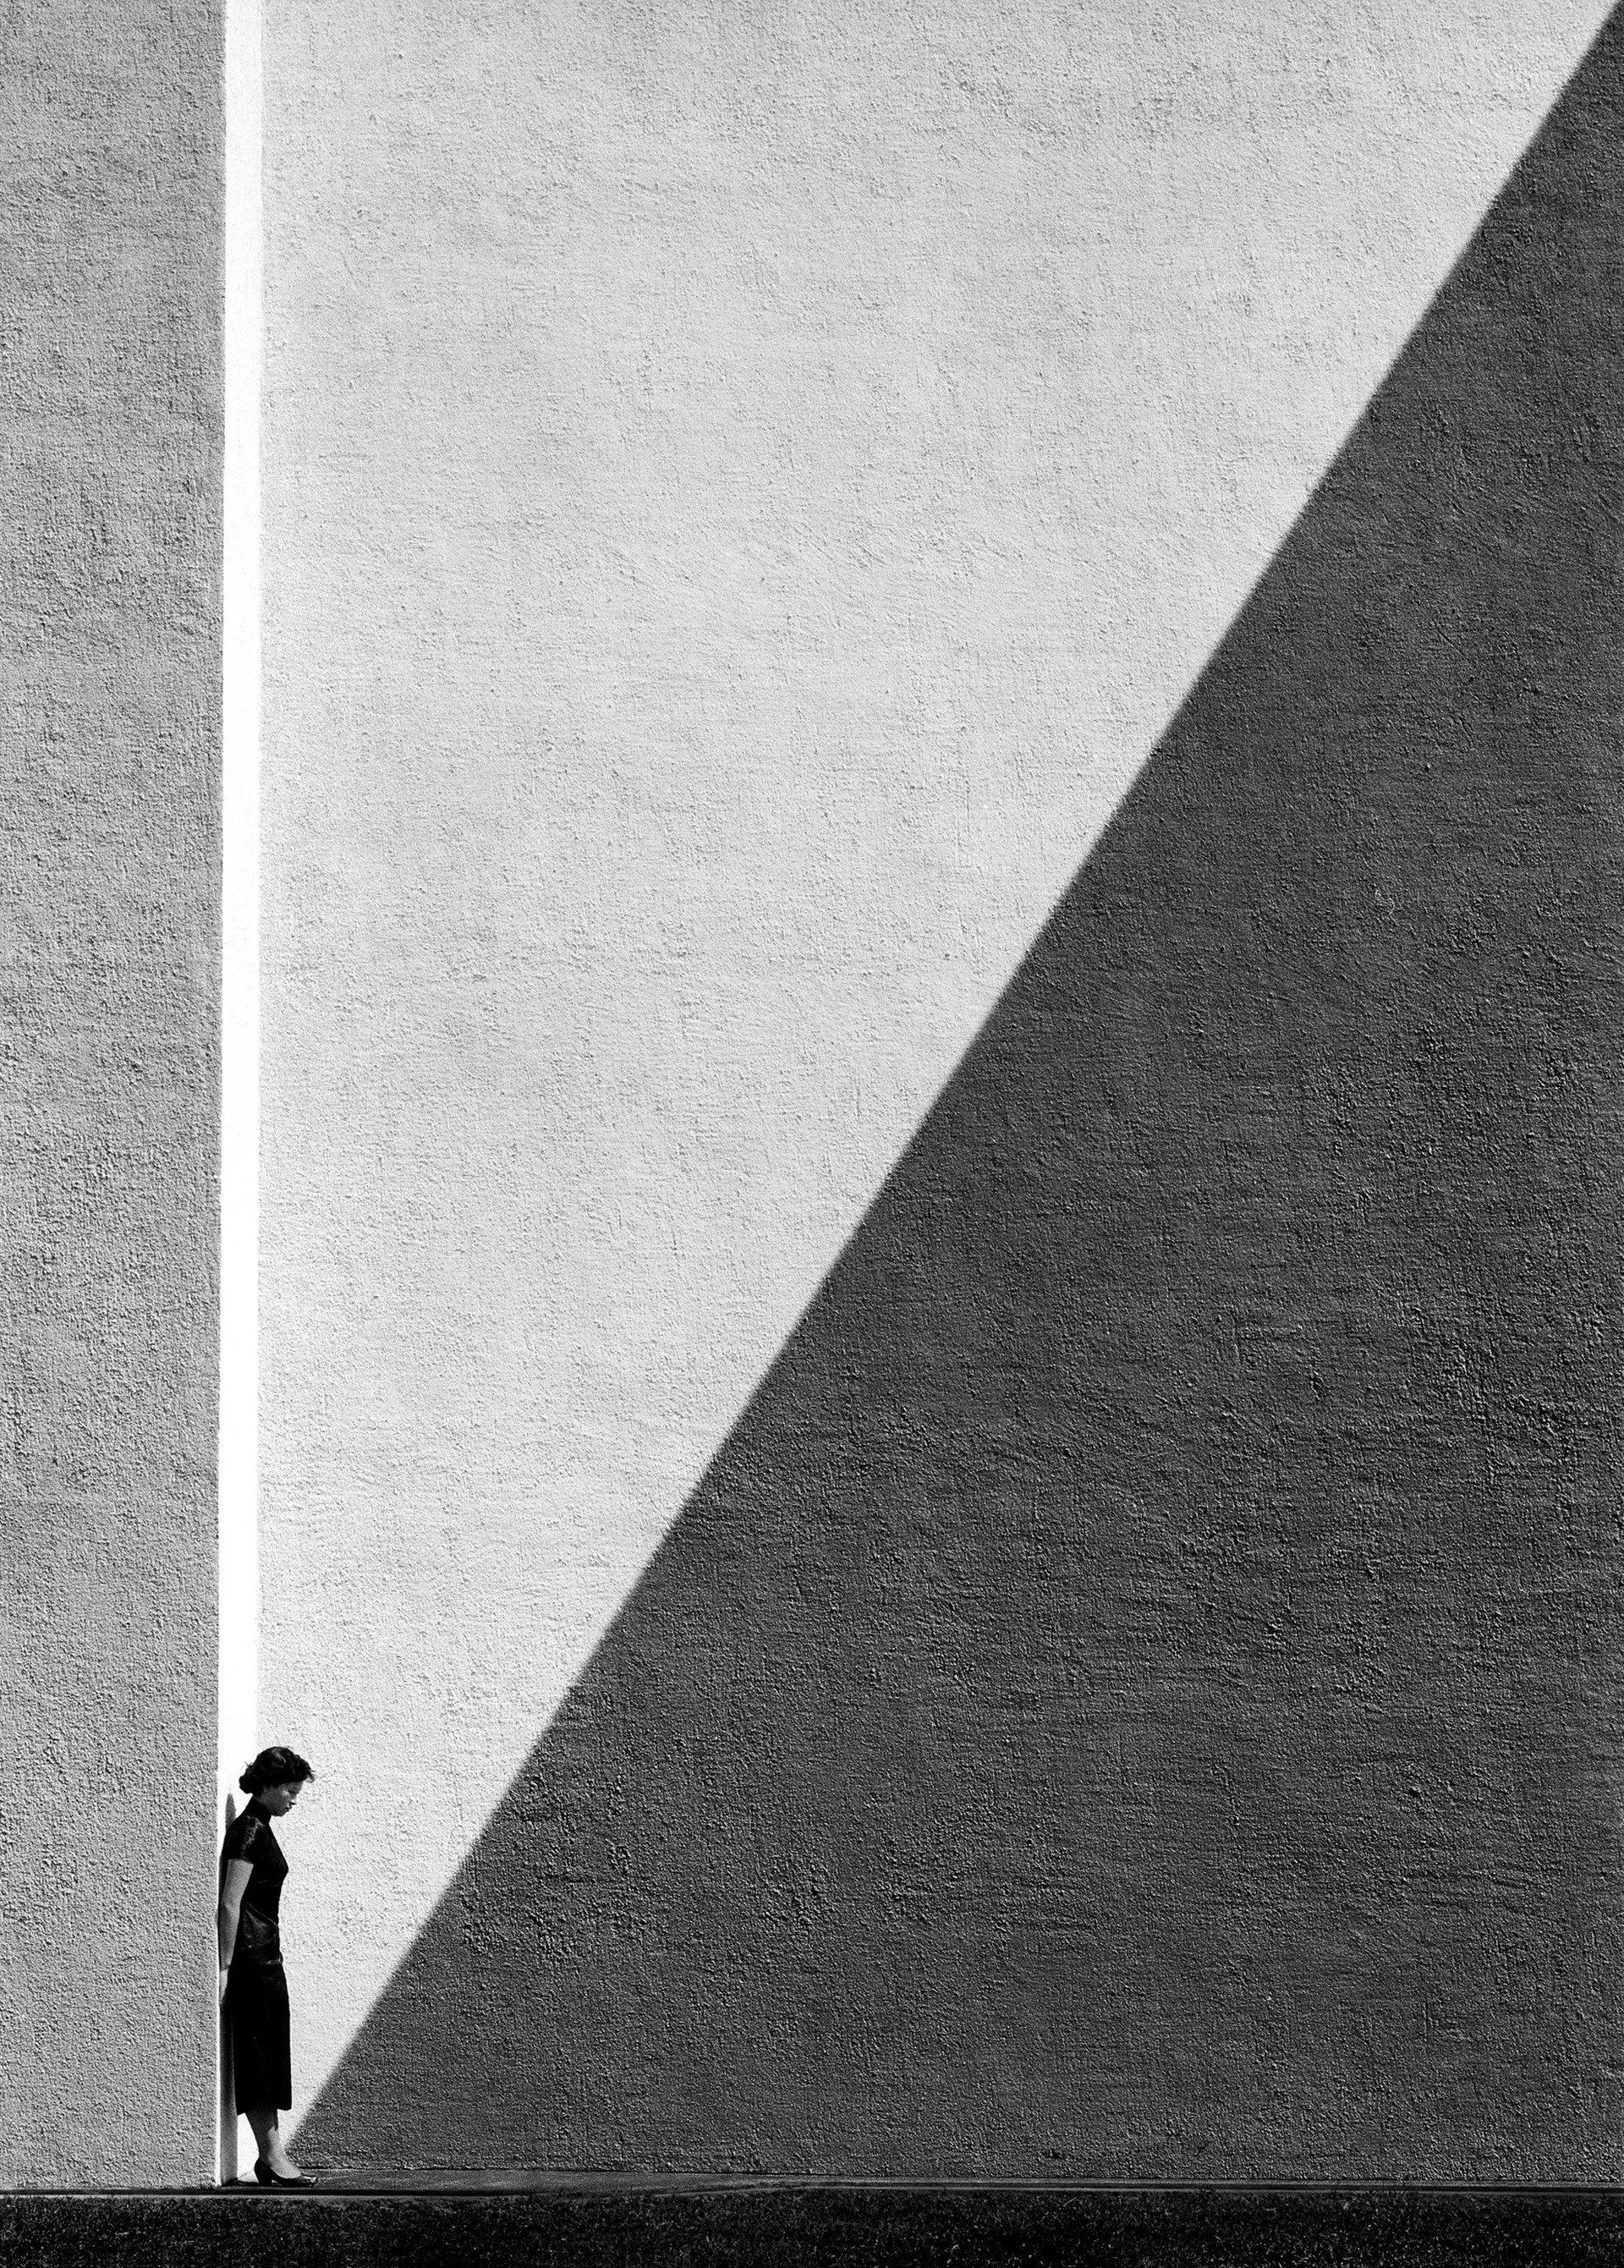 Approaching Shadow (陰影), Hong Kong, 1954